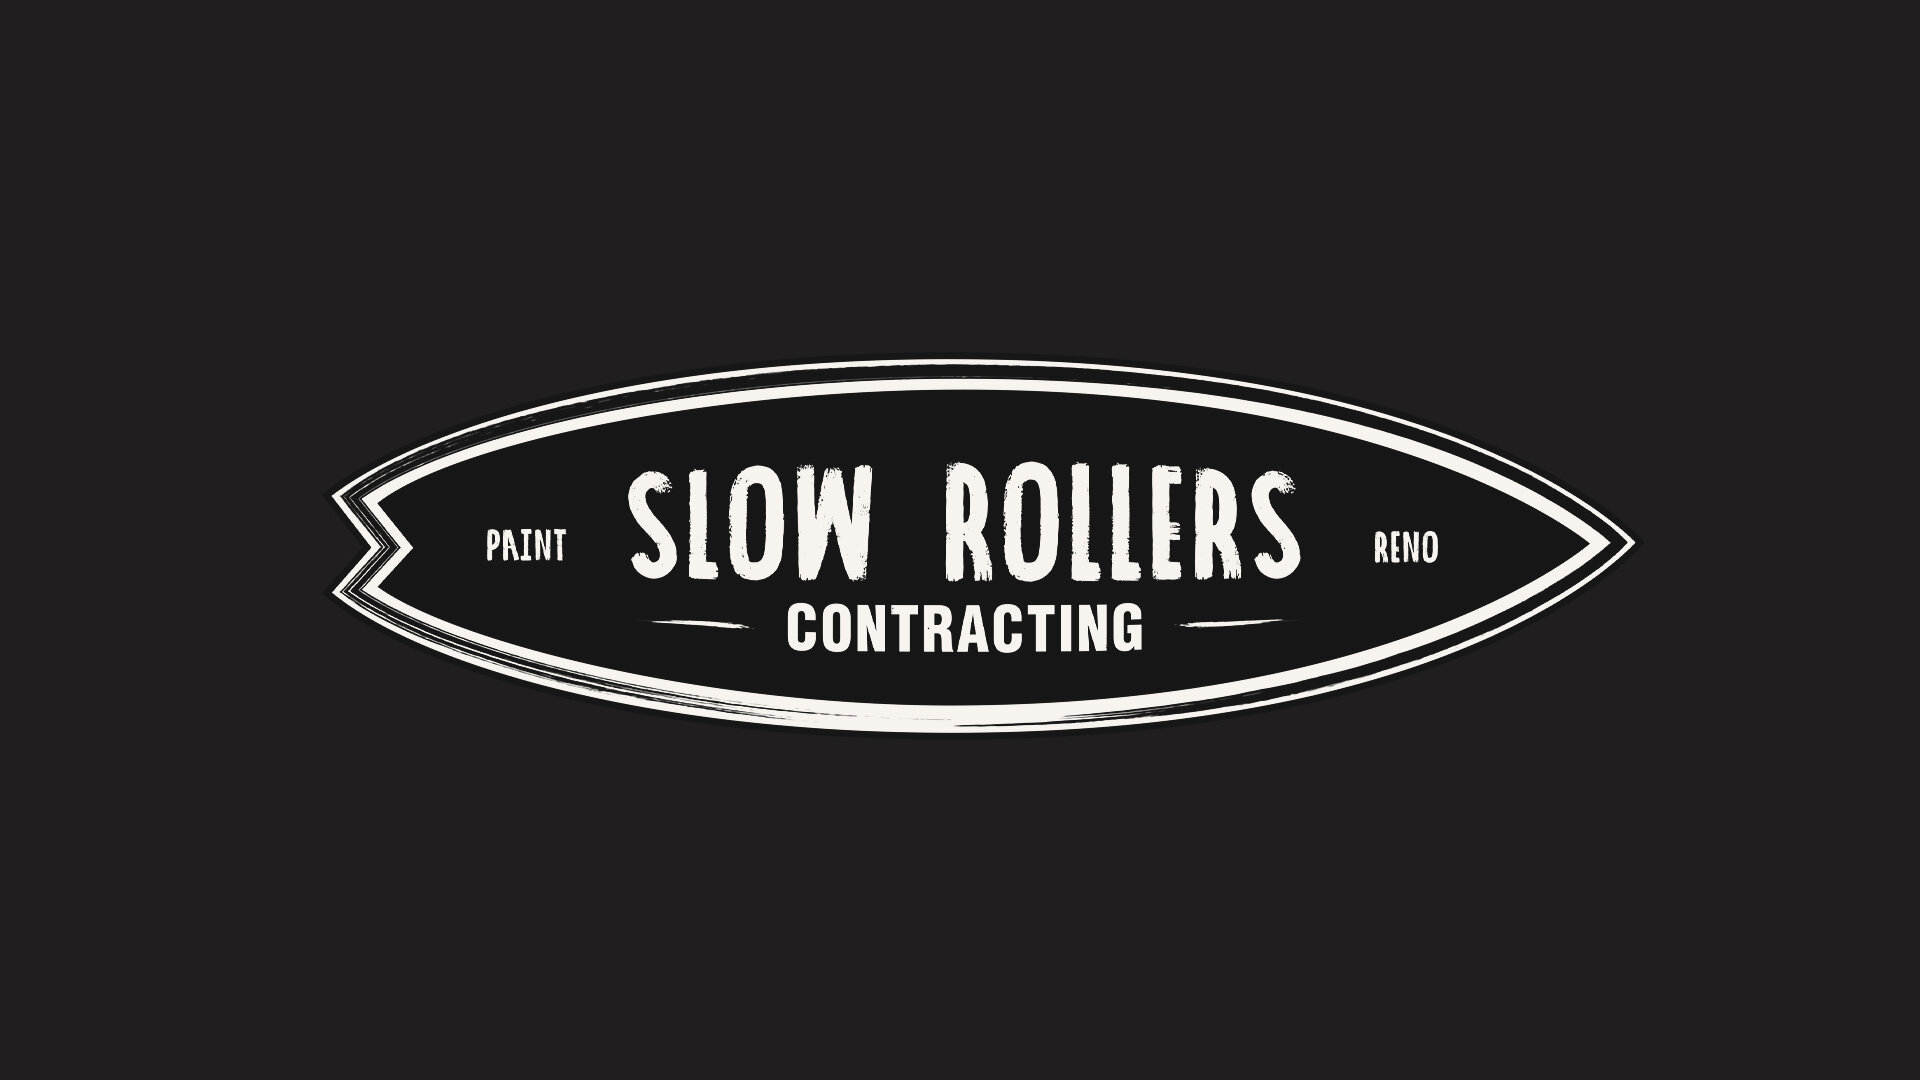 SlowRollers-02.jpg